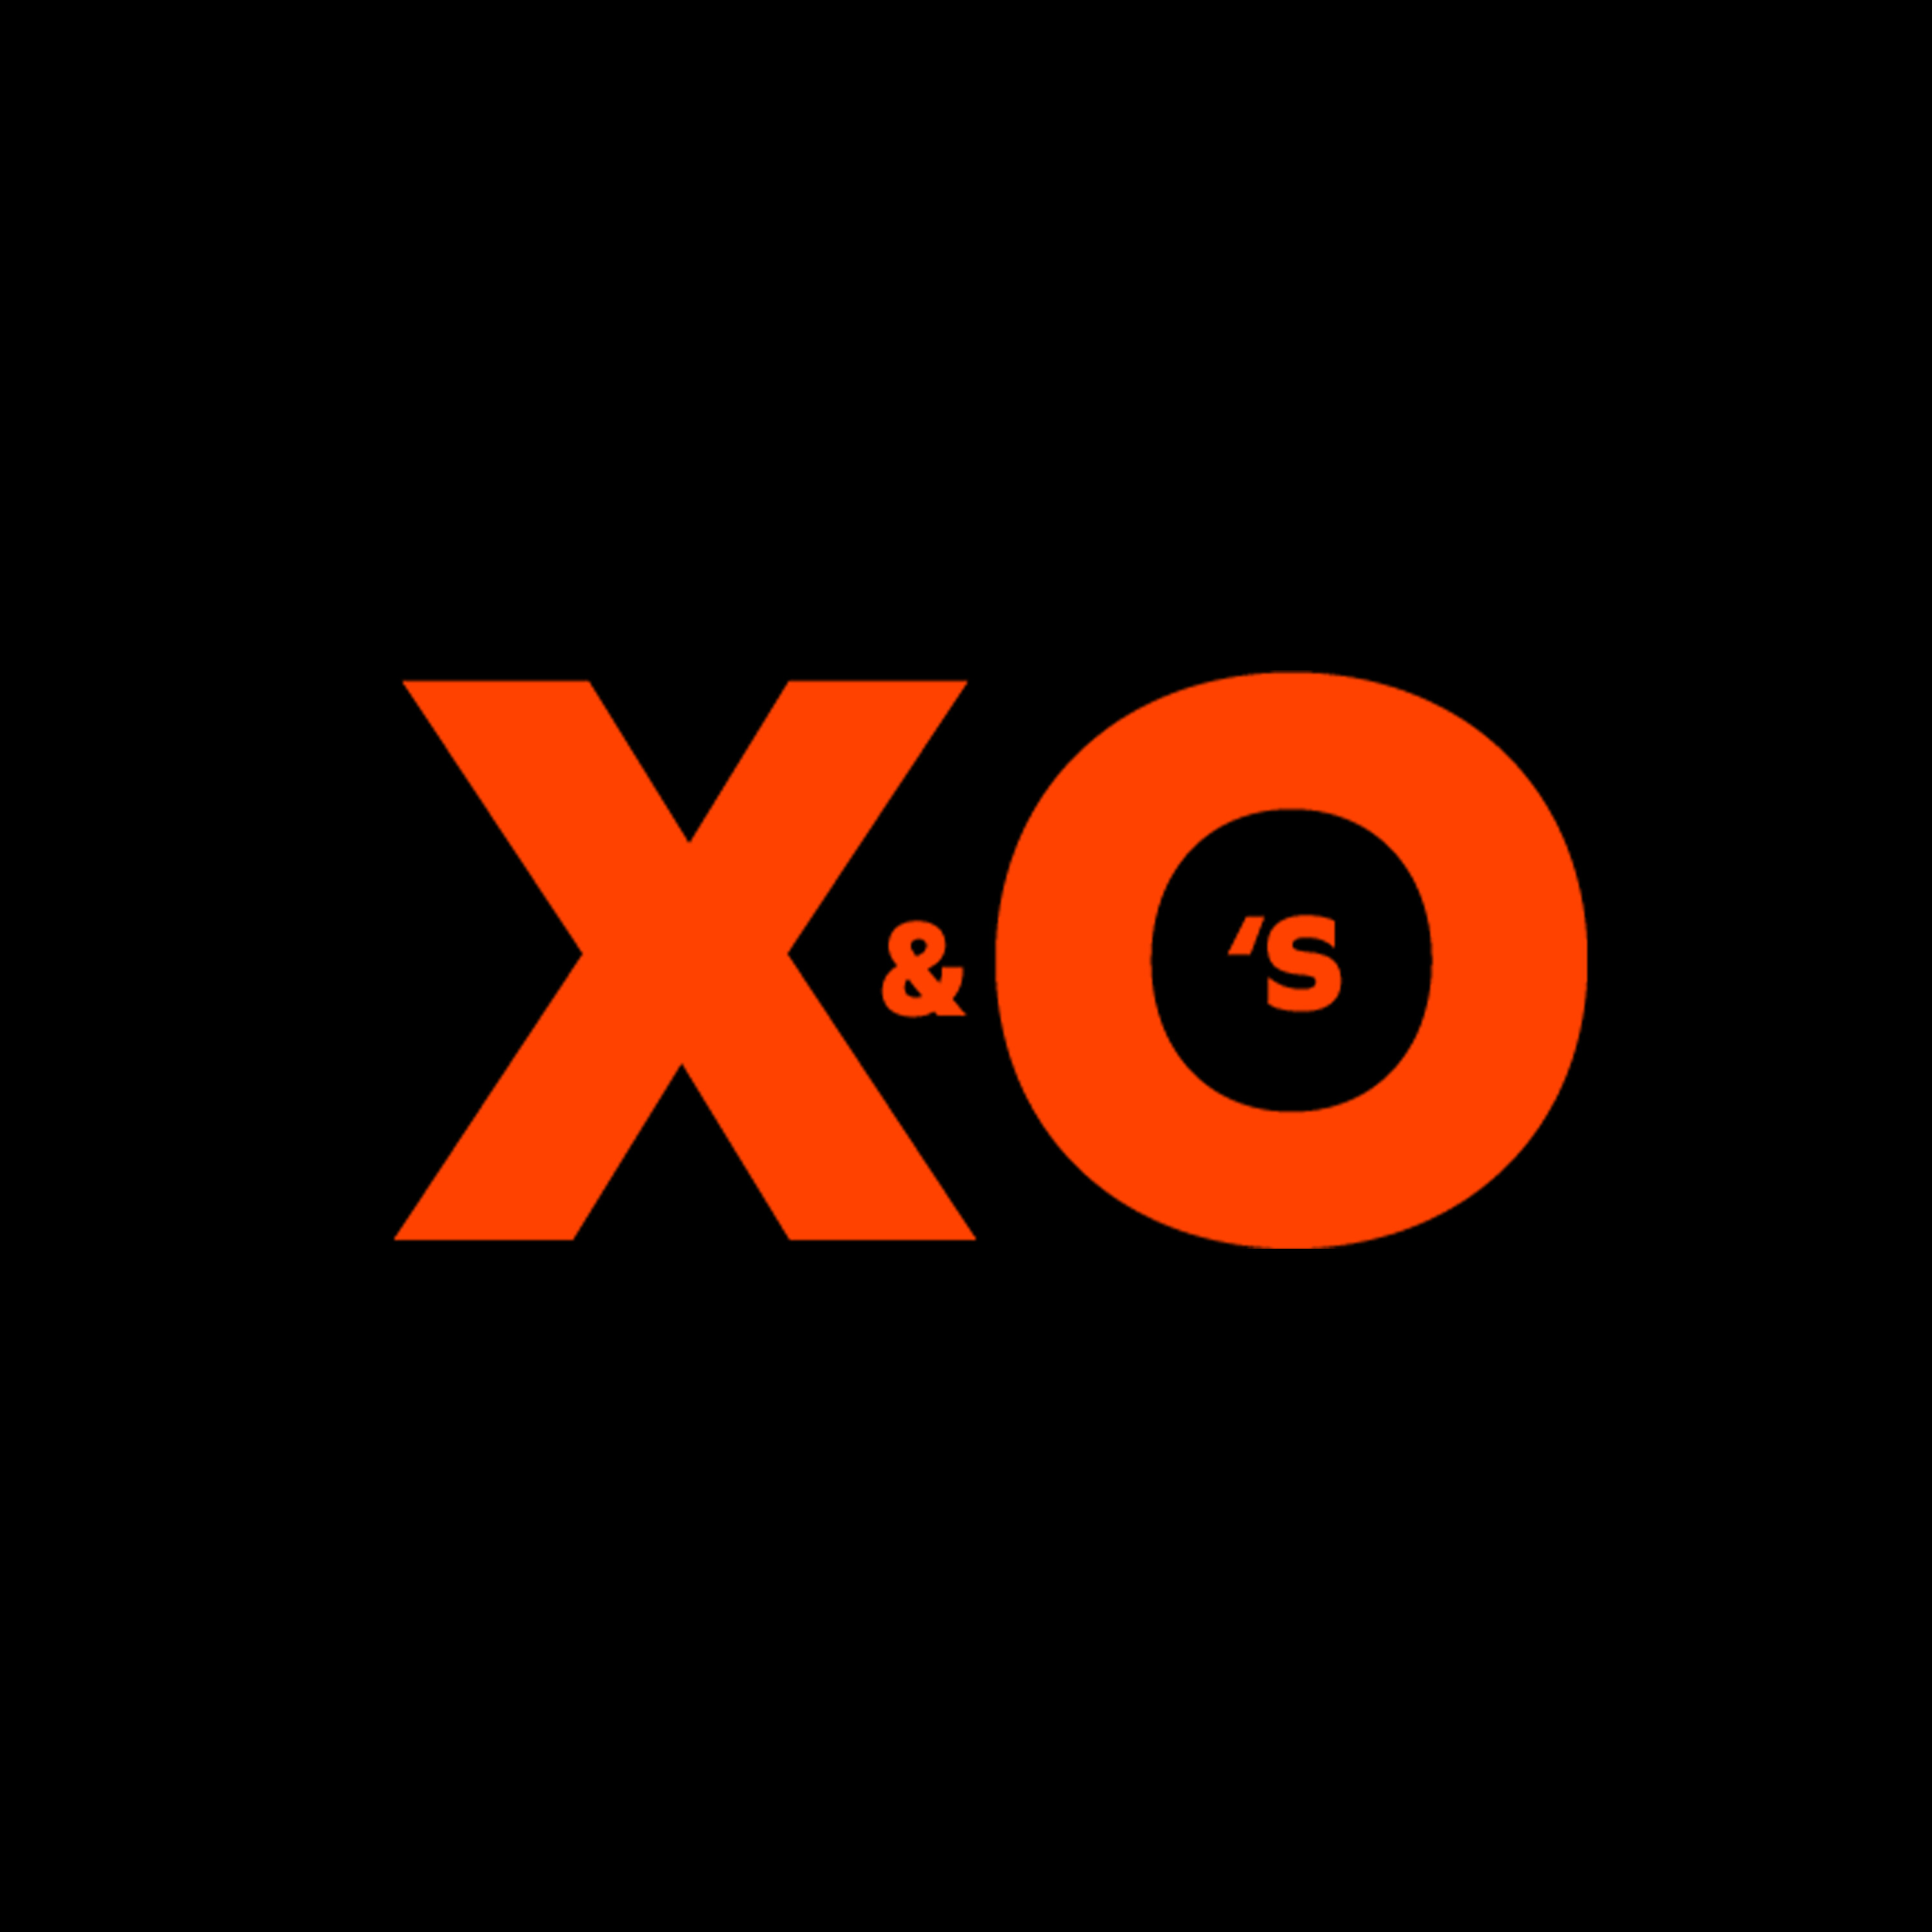 X&O's